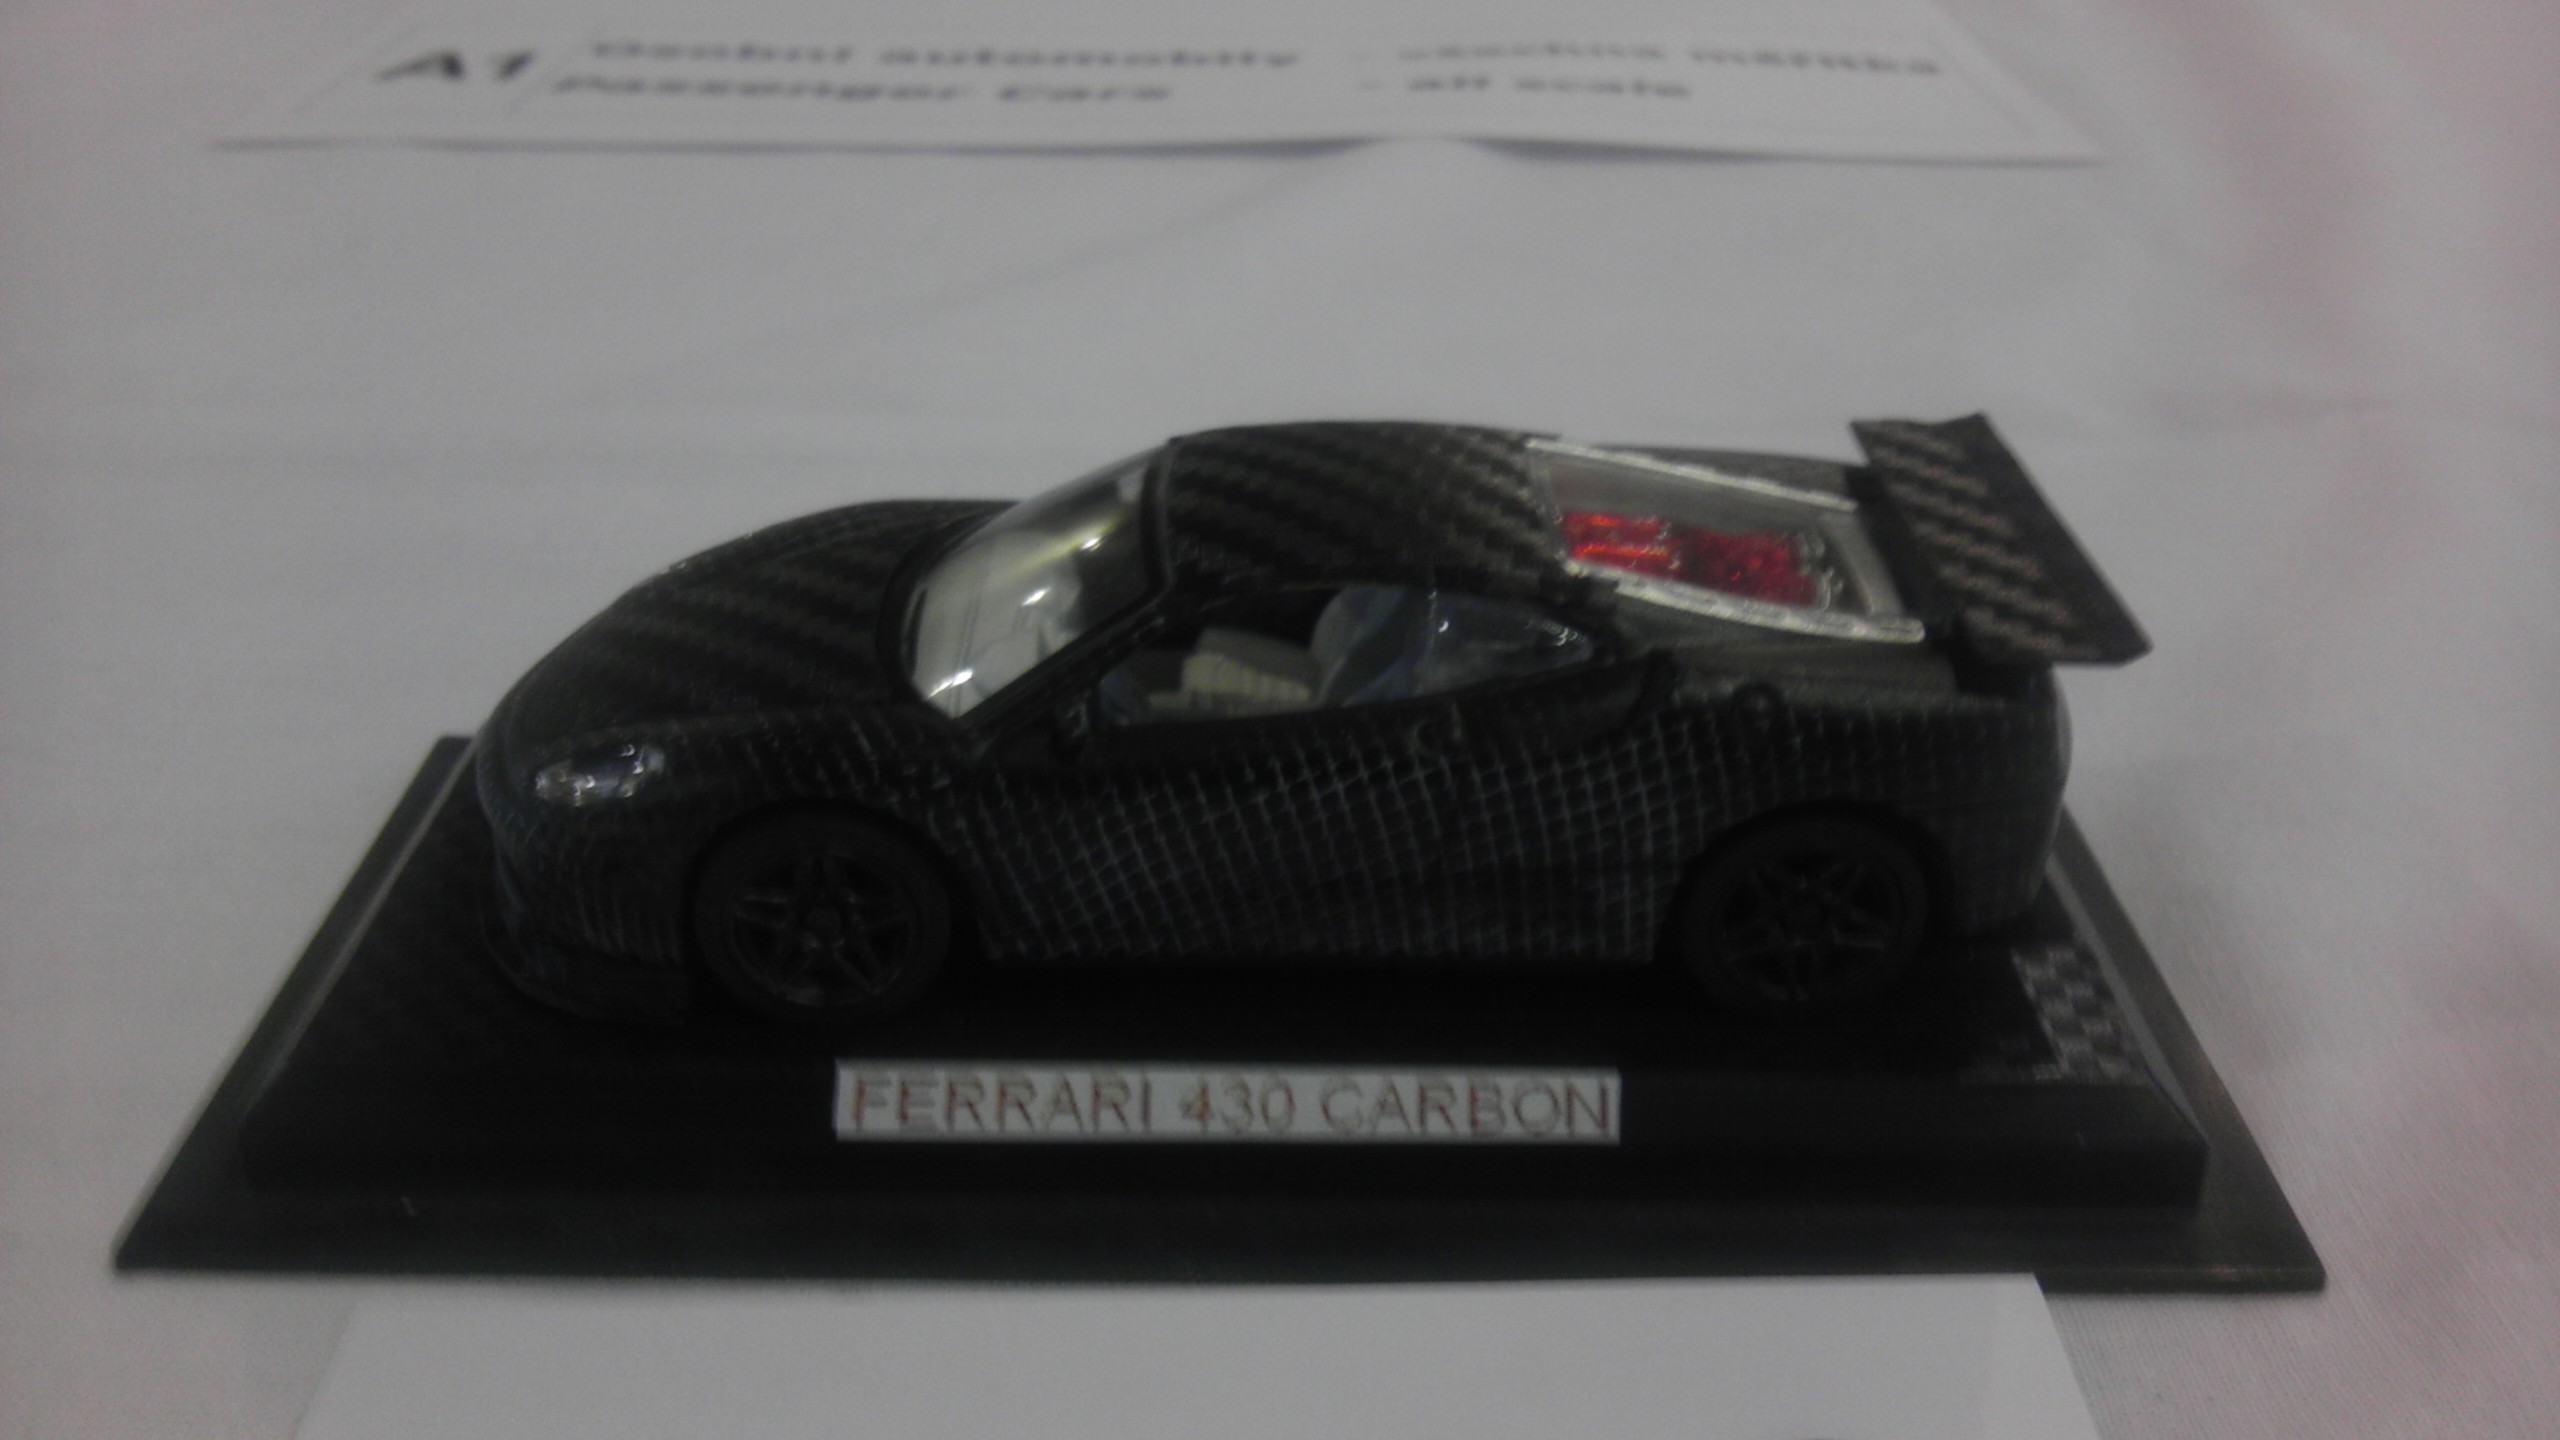 Ferrari 430 Carbon